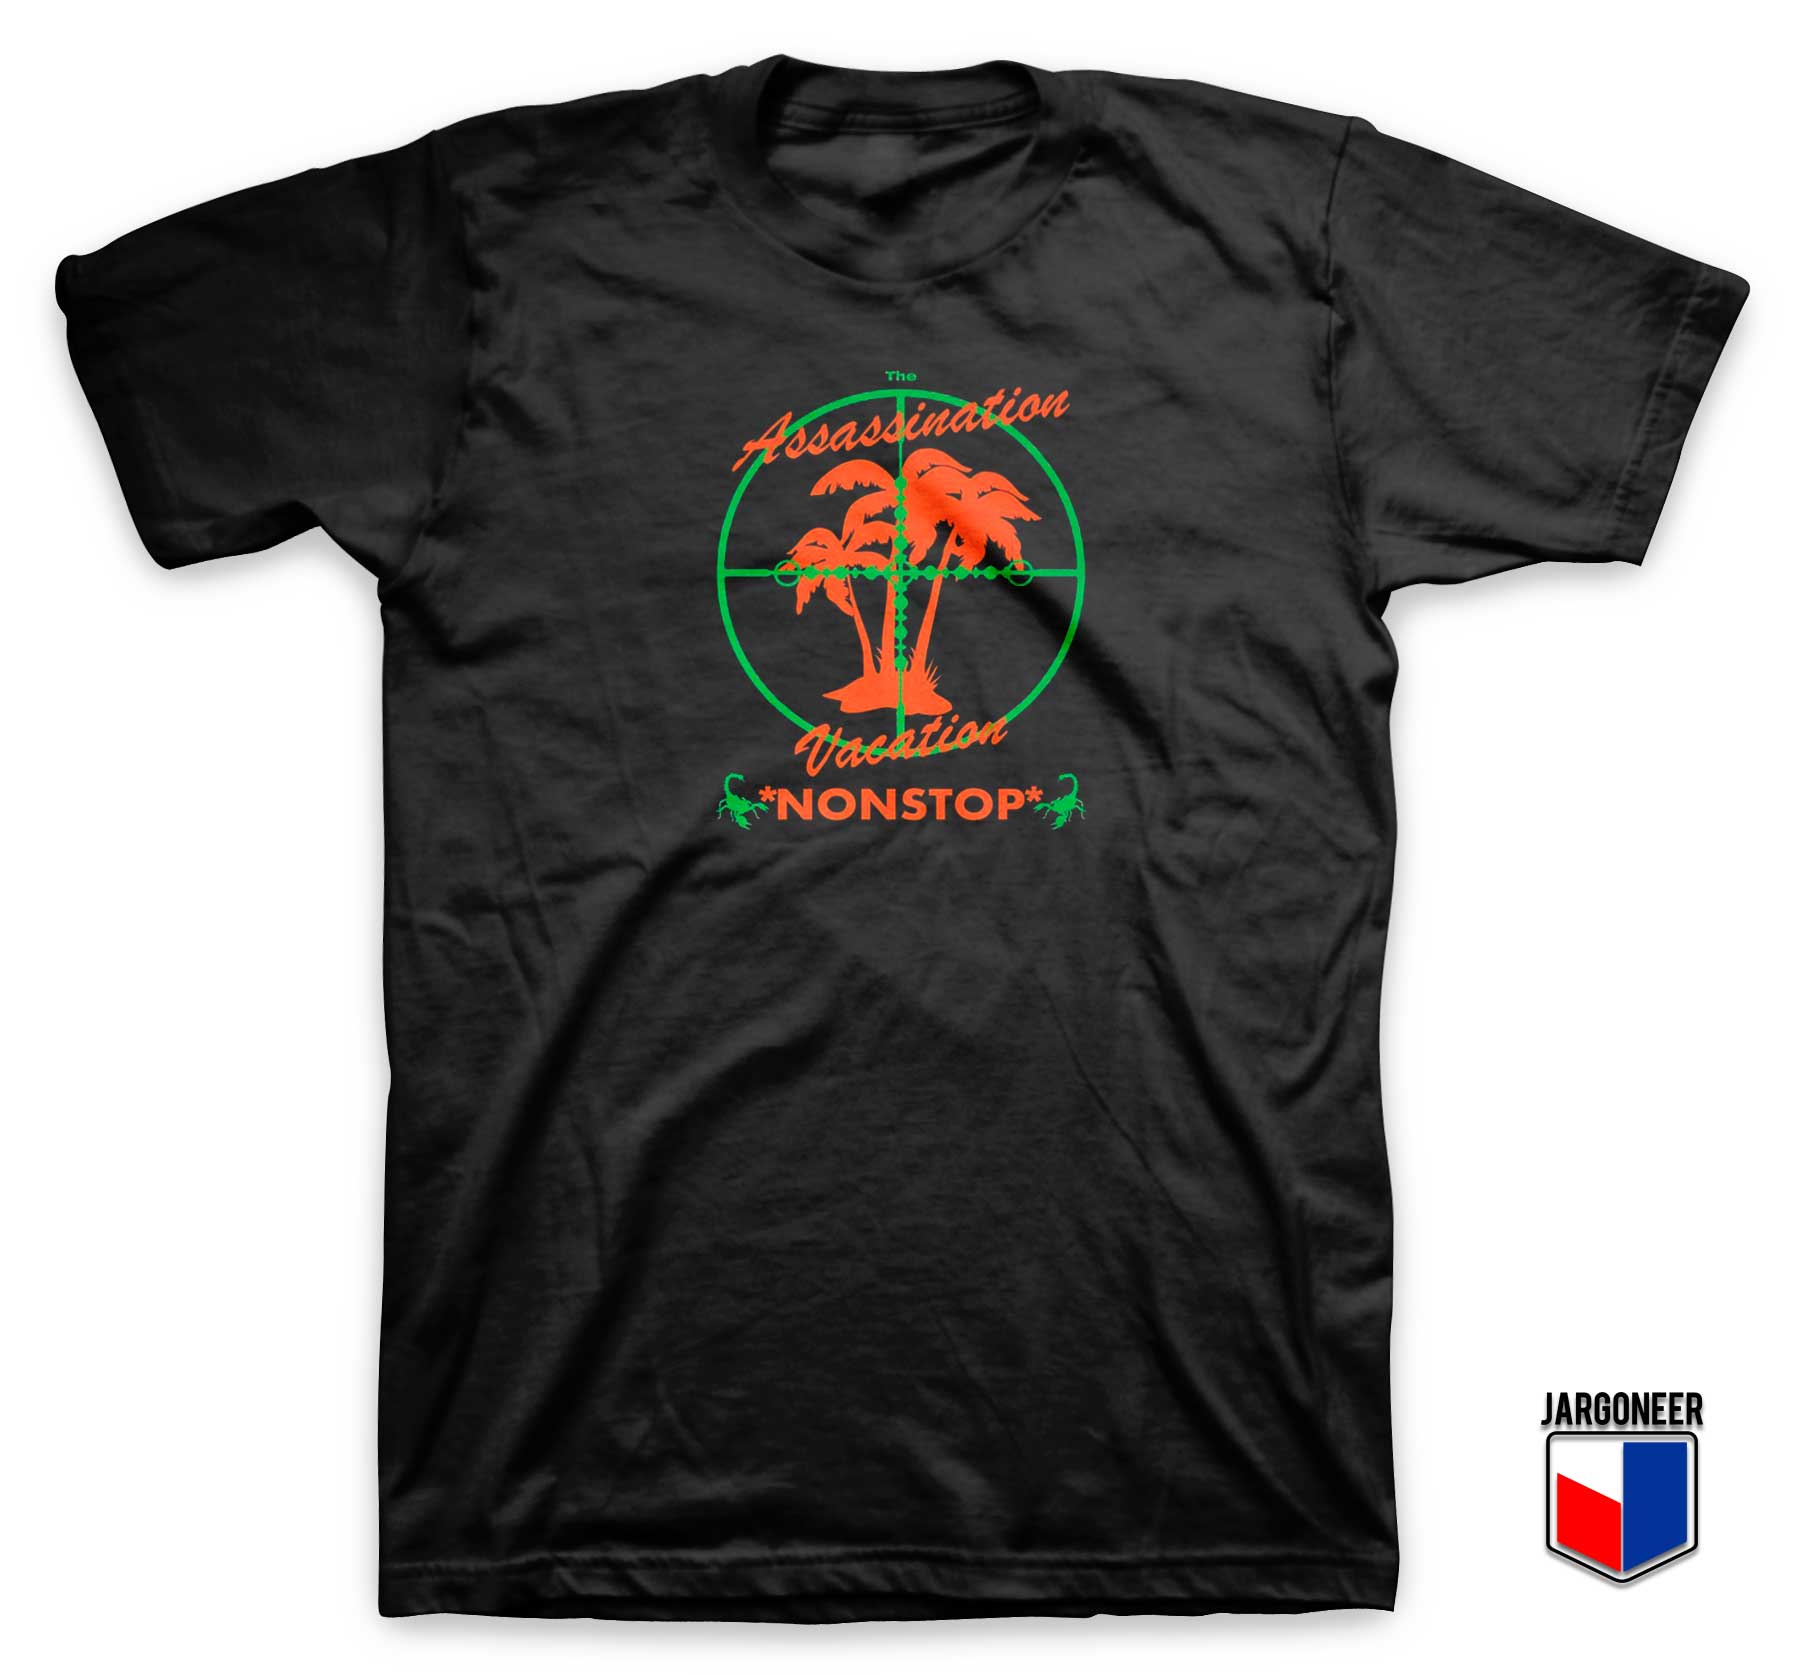 The Assassination Vacation T Shirt - Shop Unique Graphic Cool Shirt Designs